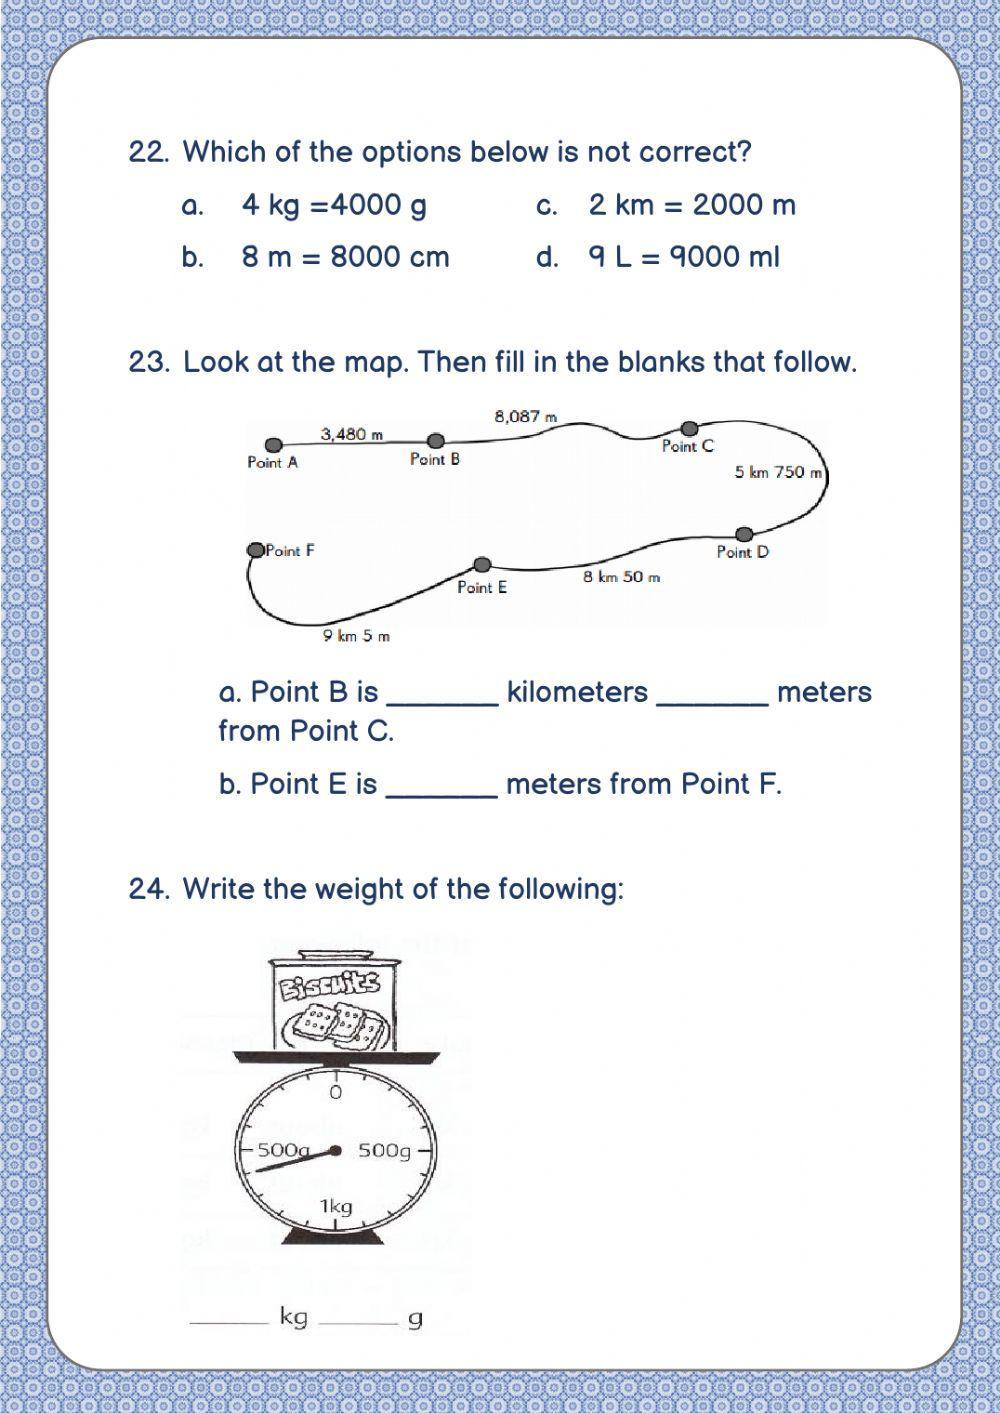 Math Final Test Part 2